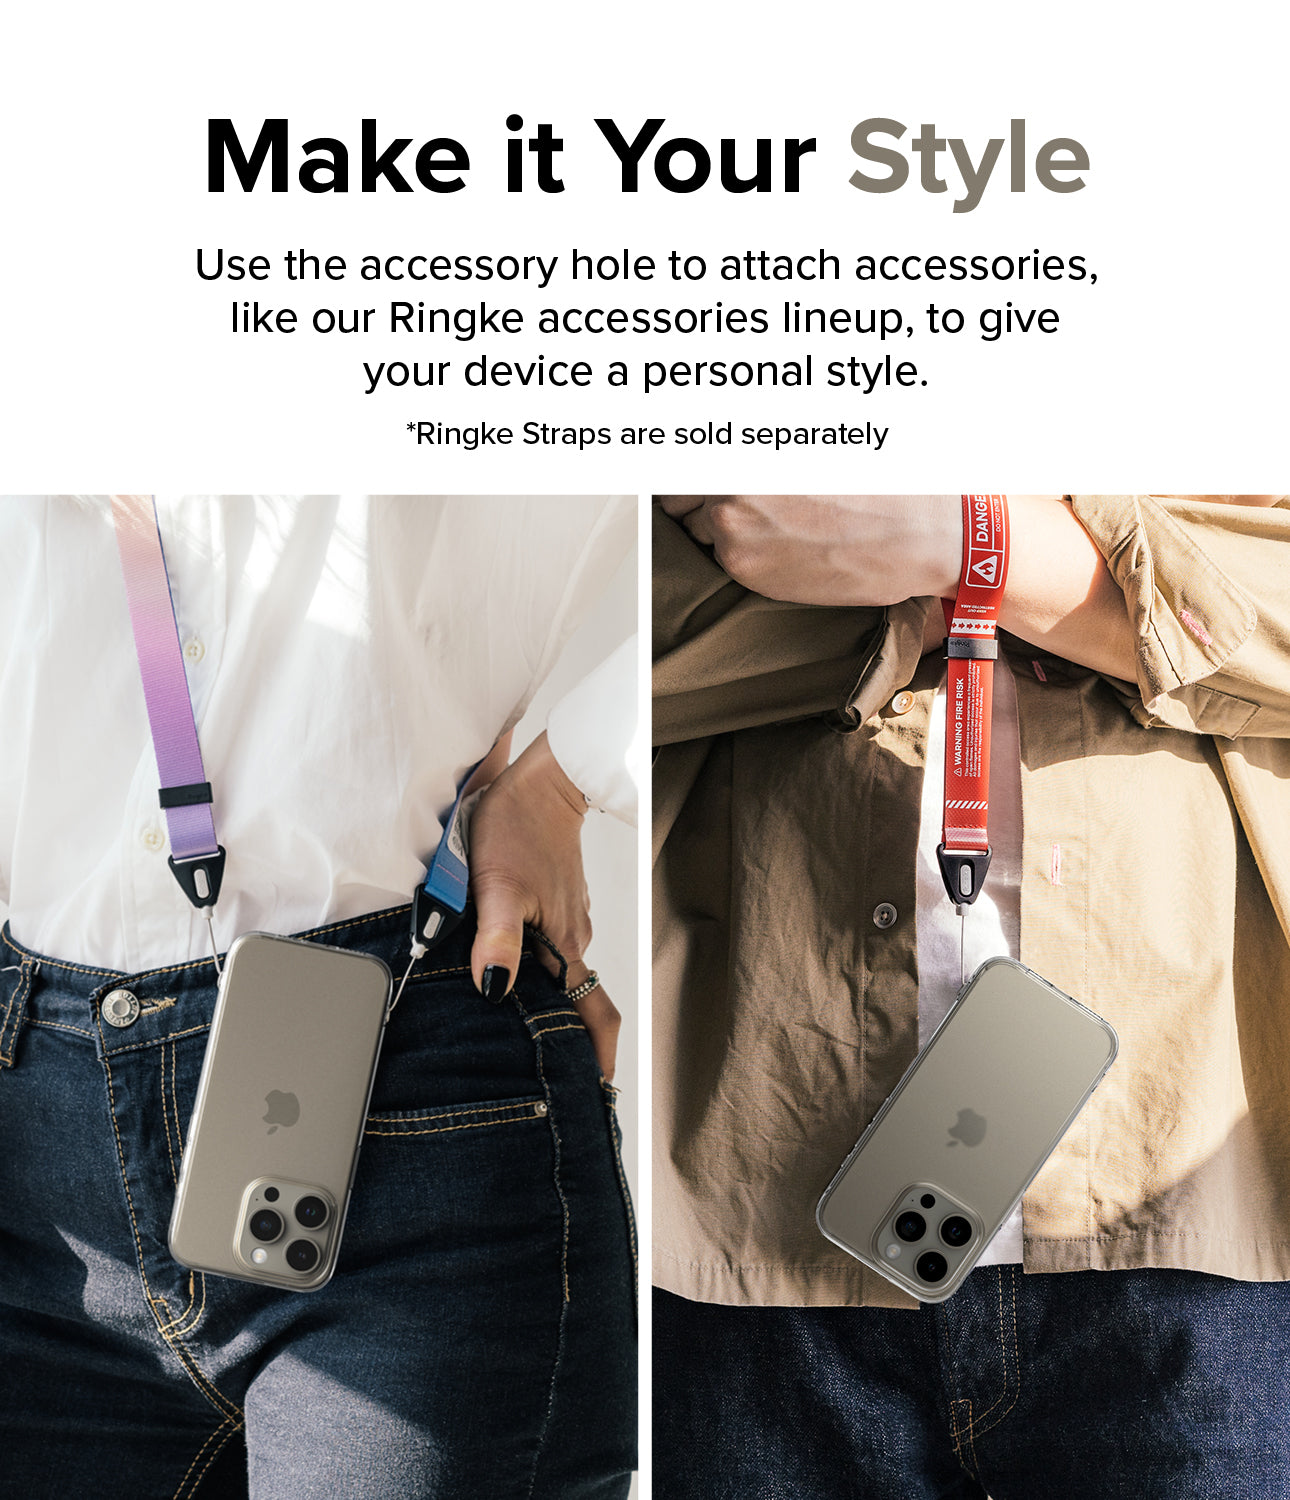 Ốp lưng iPhone 15 Pro Max | Fusion Matte Clear - Biến nó thành phong cách của bạn. Sử dụng lỗ phụ kiện để gắn các phụ kiện, chẳng hạn như dòng phụ kiện Ringke của chúng tôi, nhằm tạo phong cách cá nhân cho thiết bị của bạn.